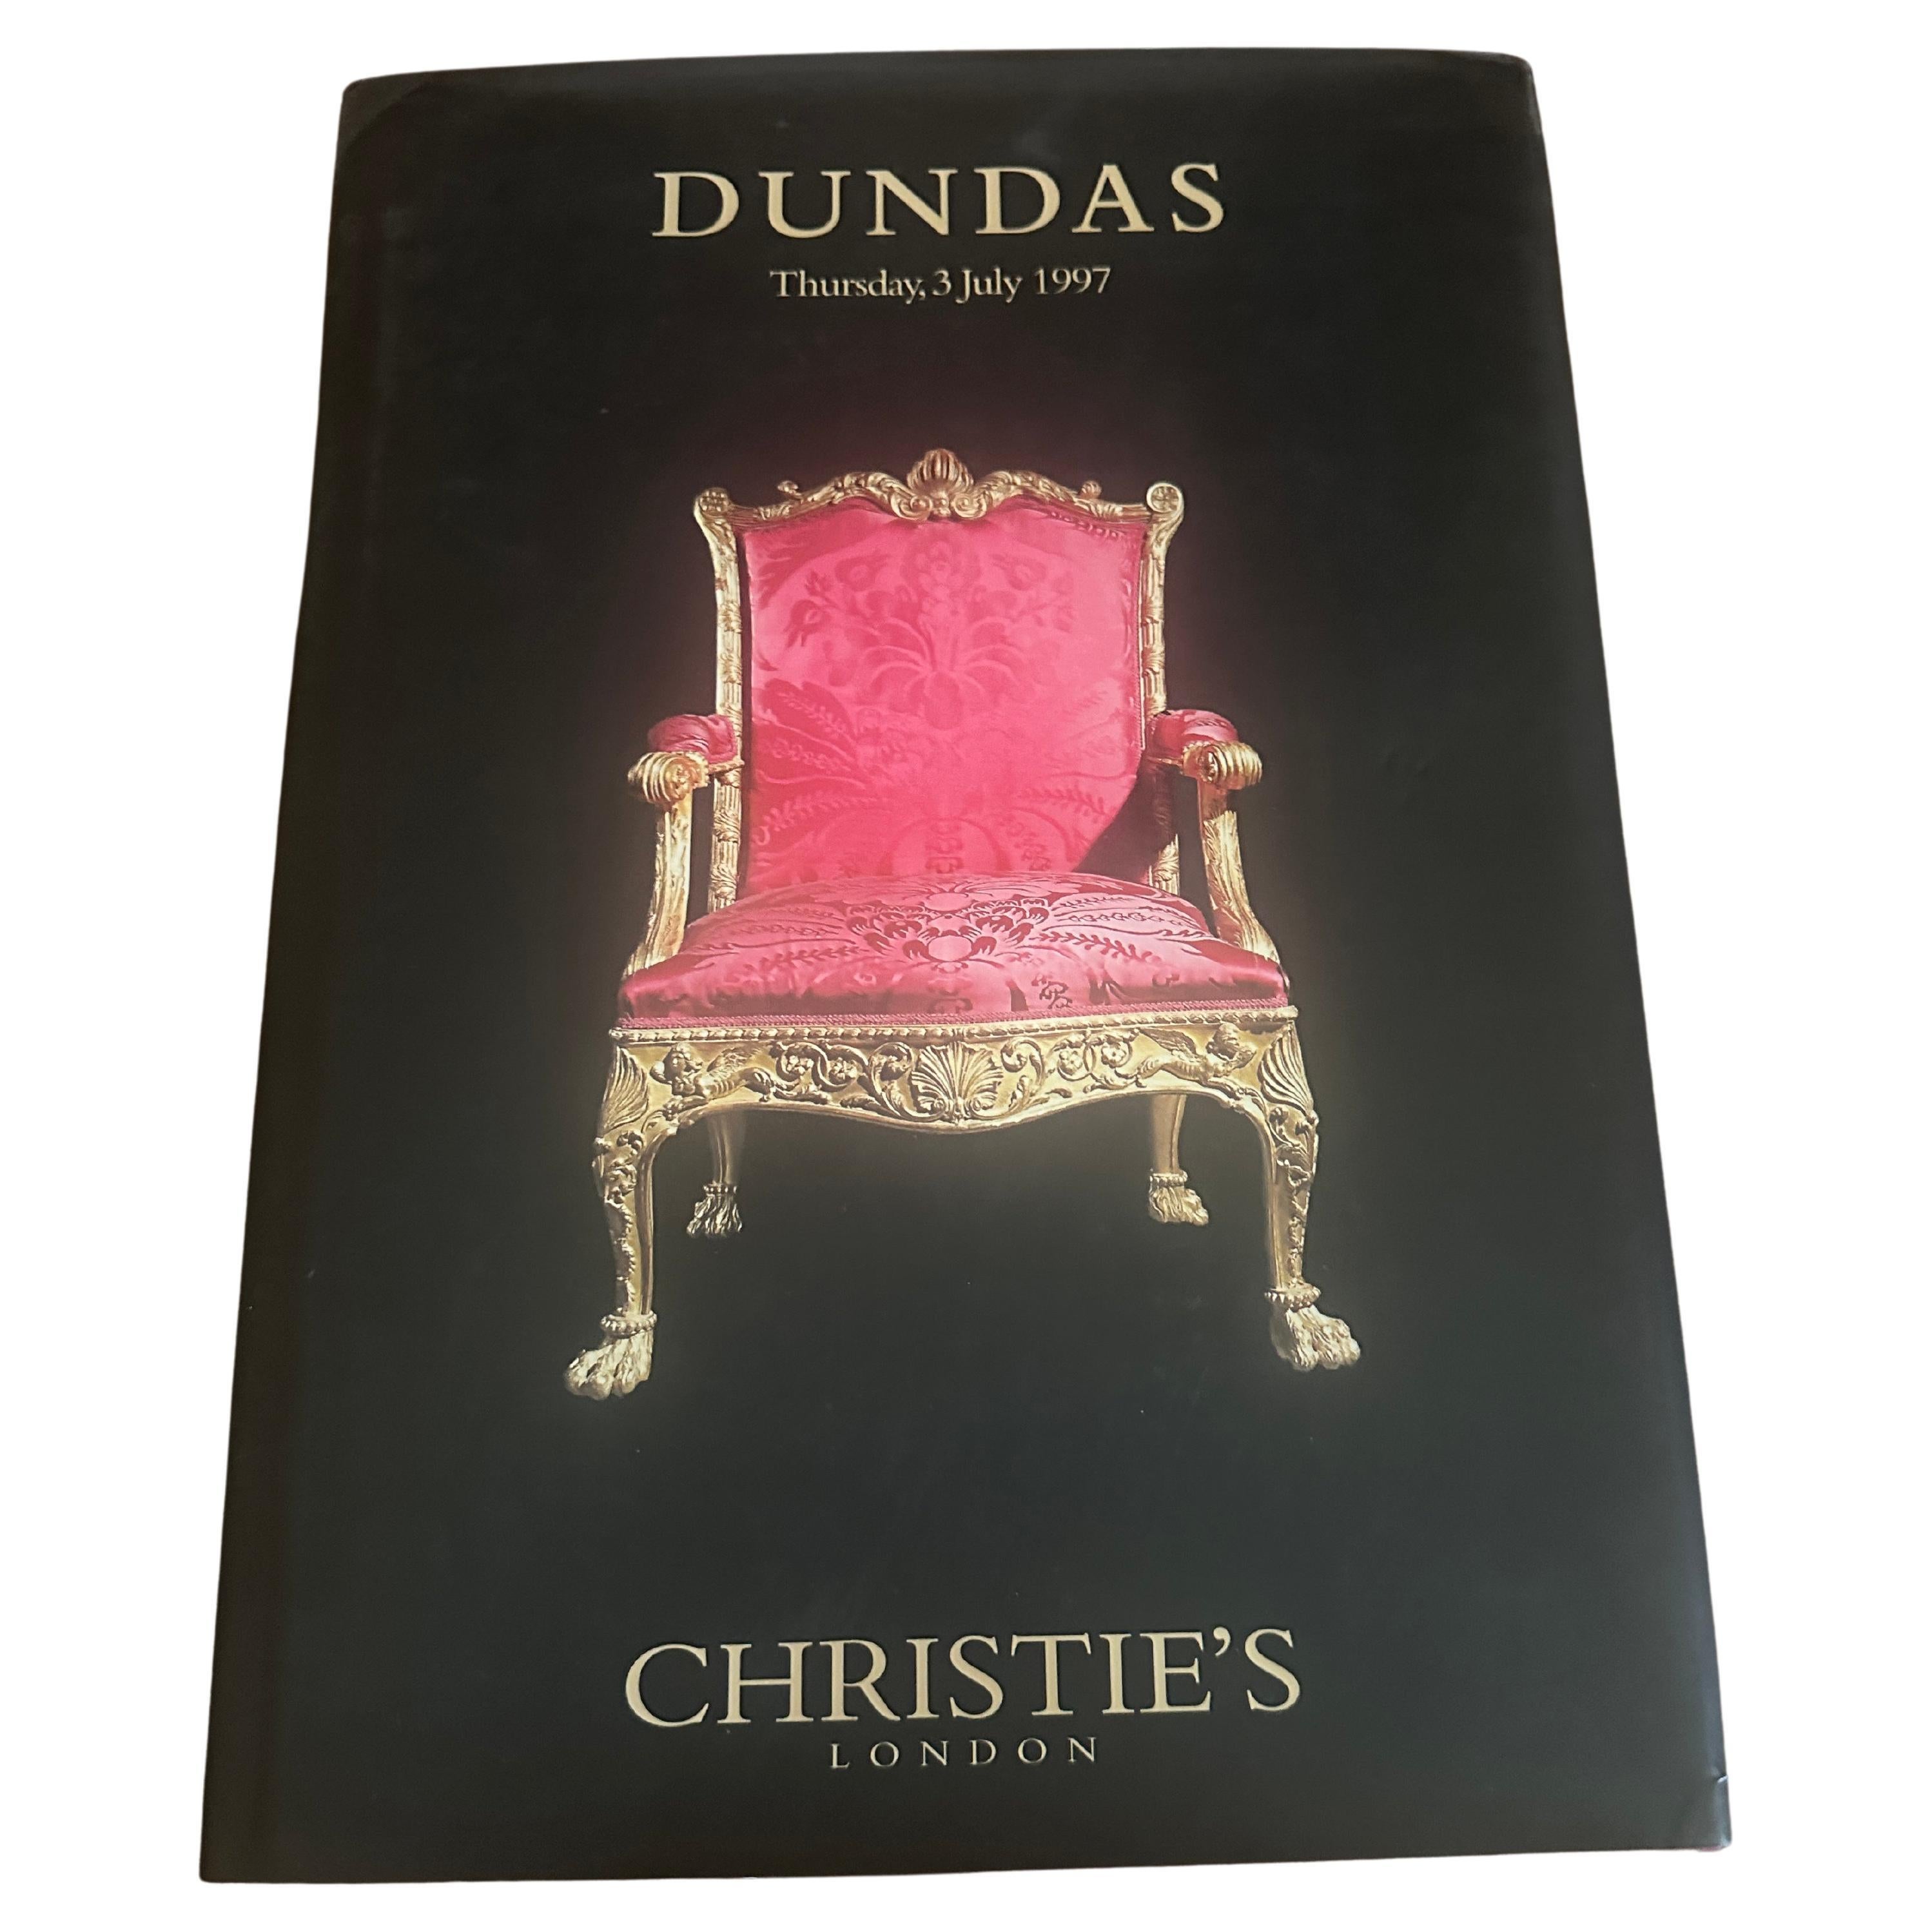 Vente Christie's Dundas, 1997